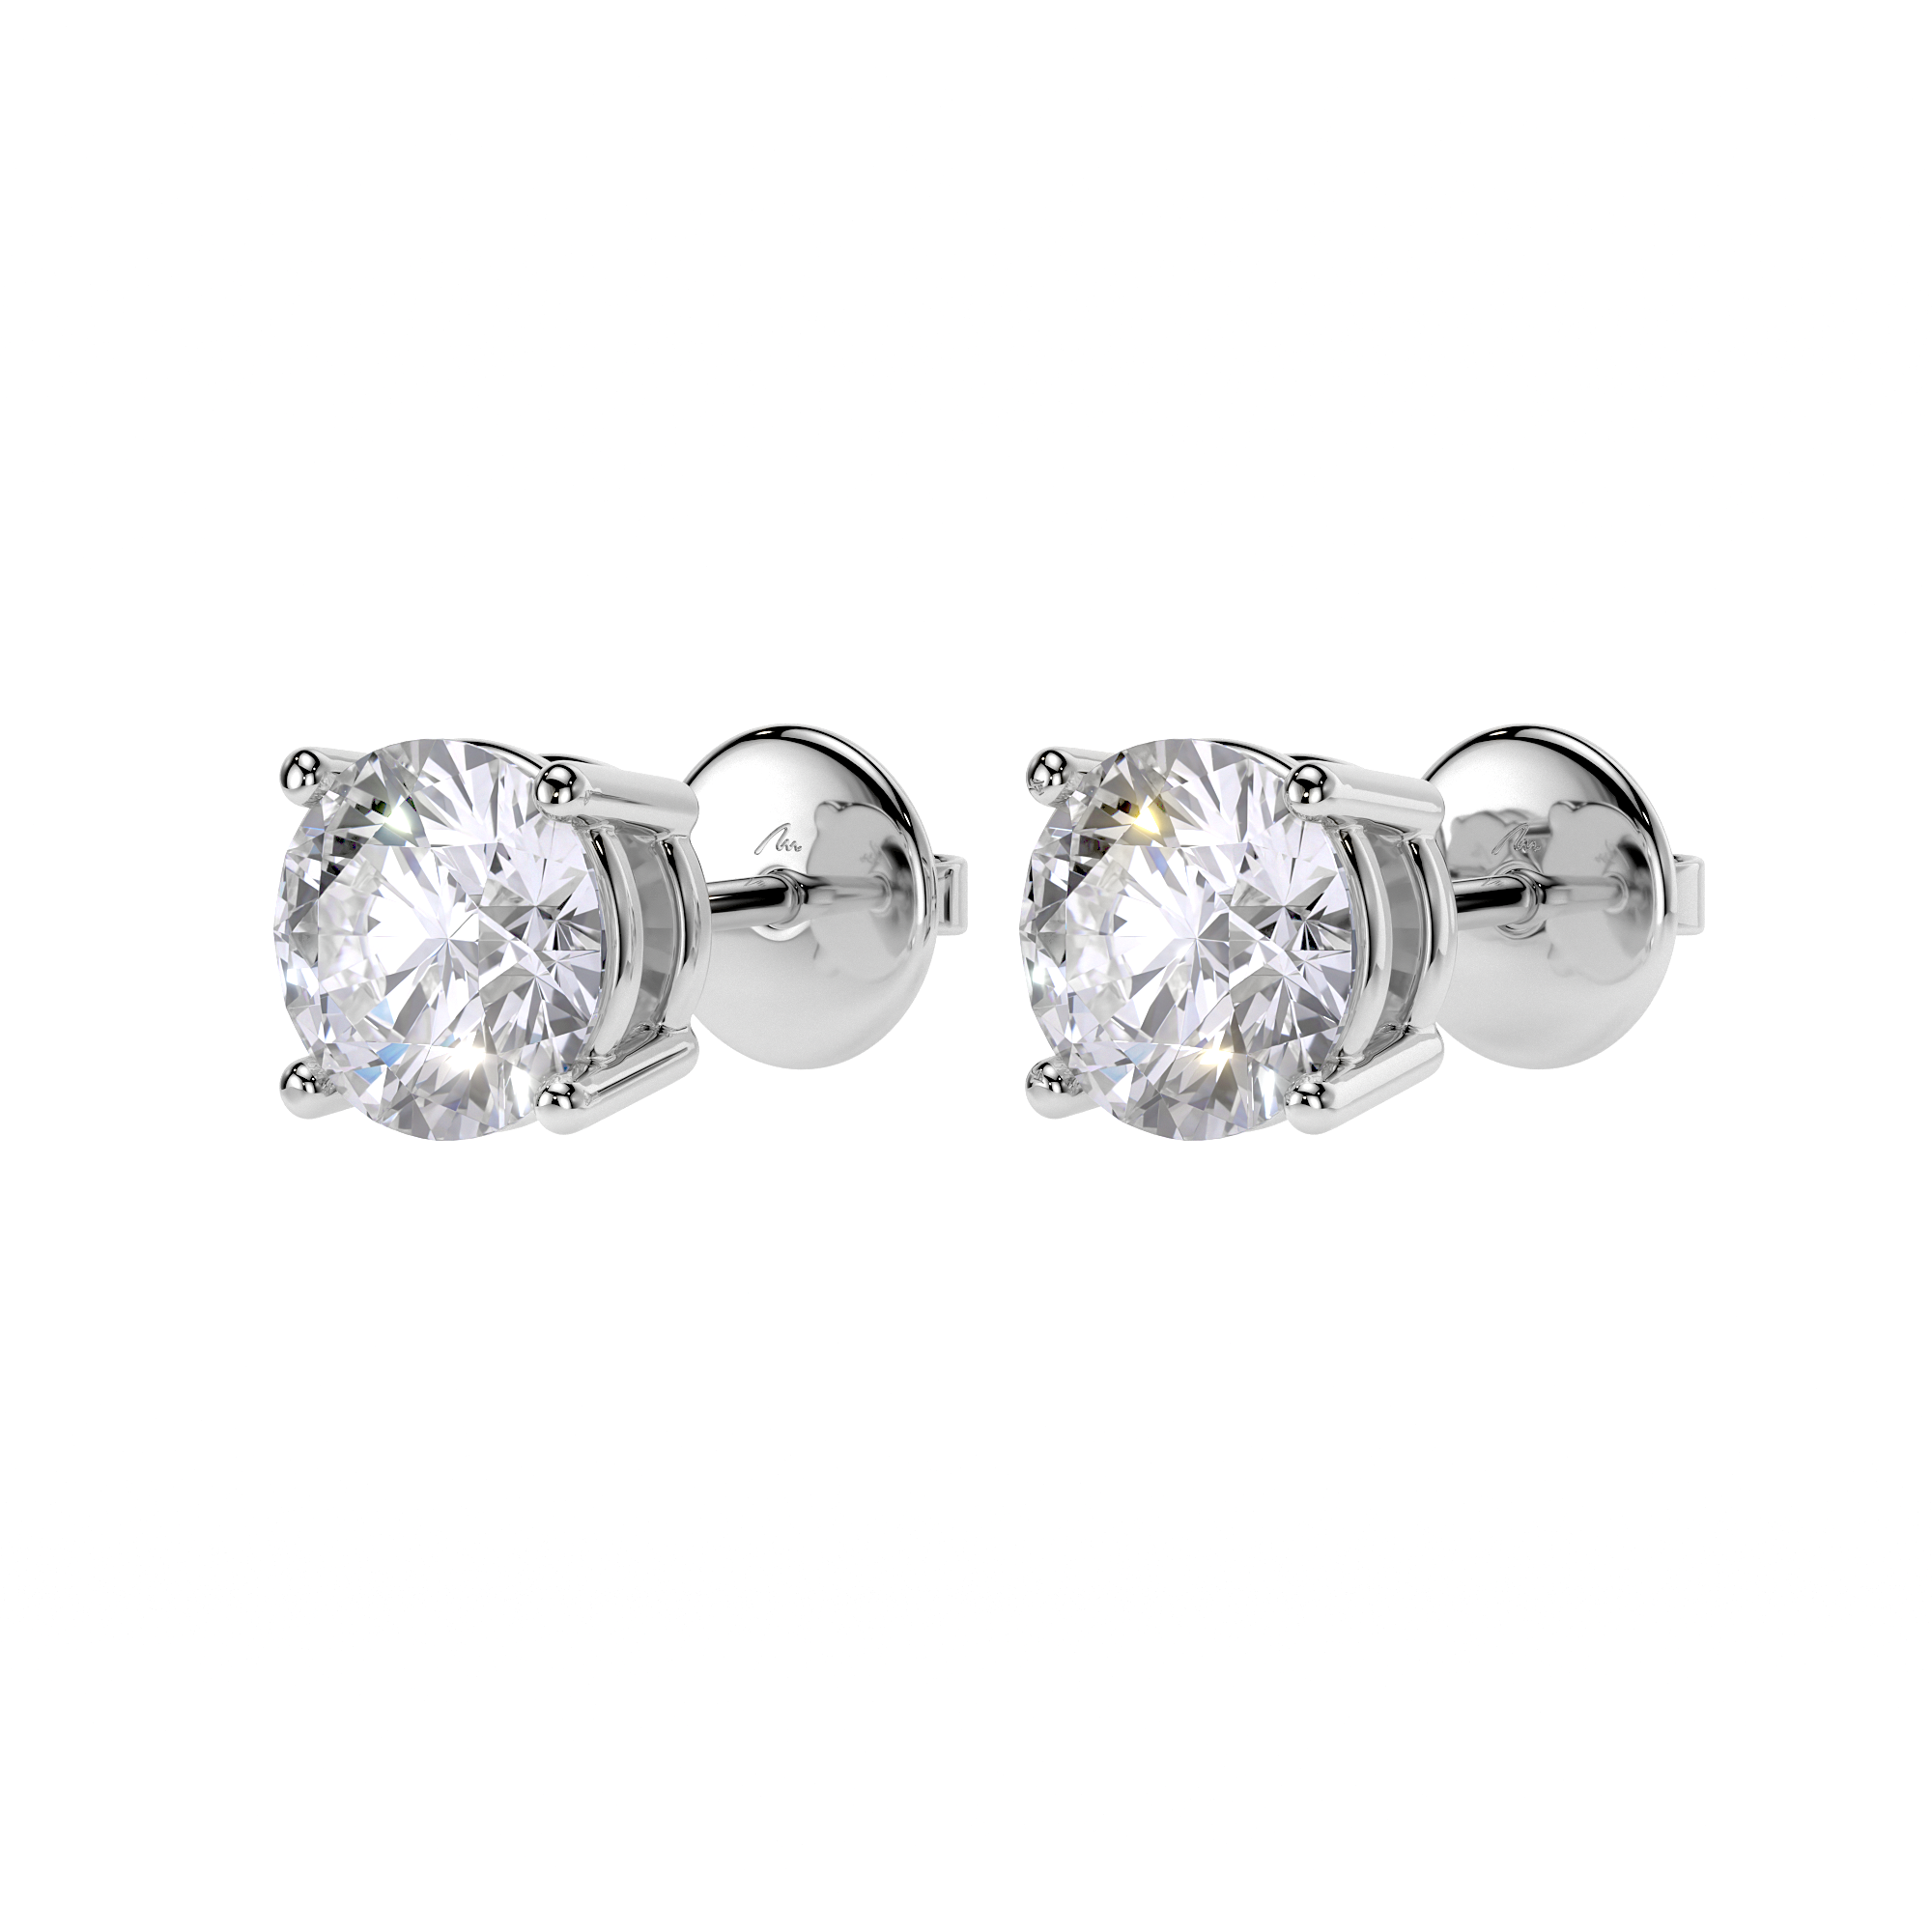 14 k white gold white diamonds 2.00 CT Studs earrings